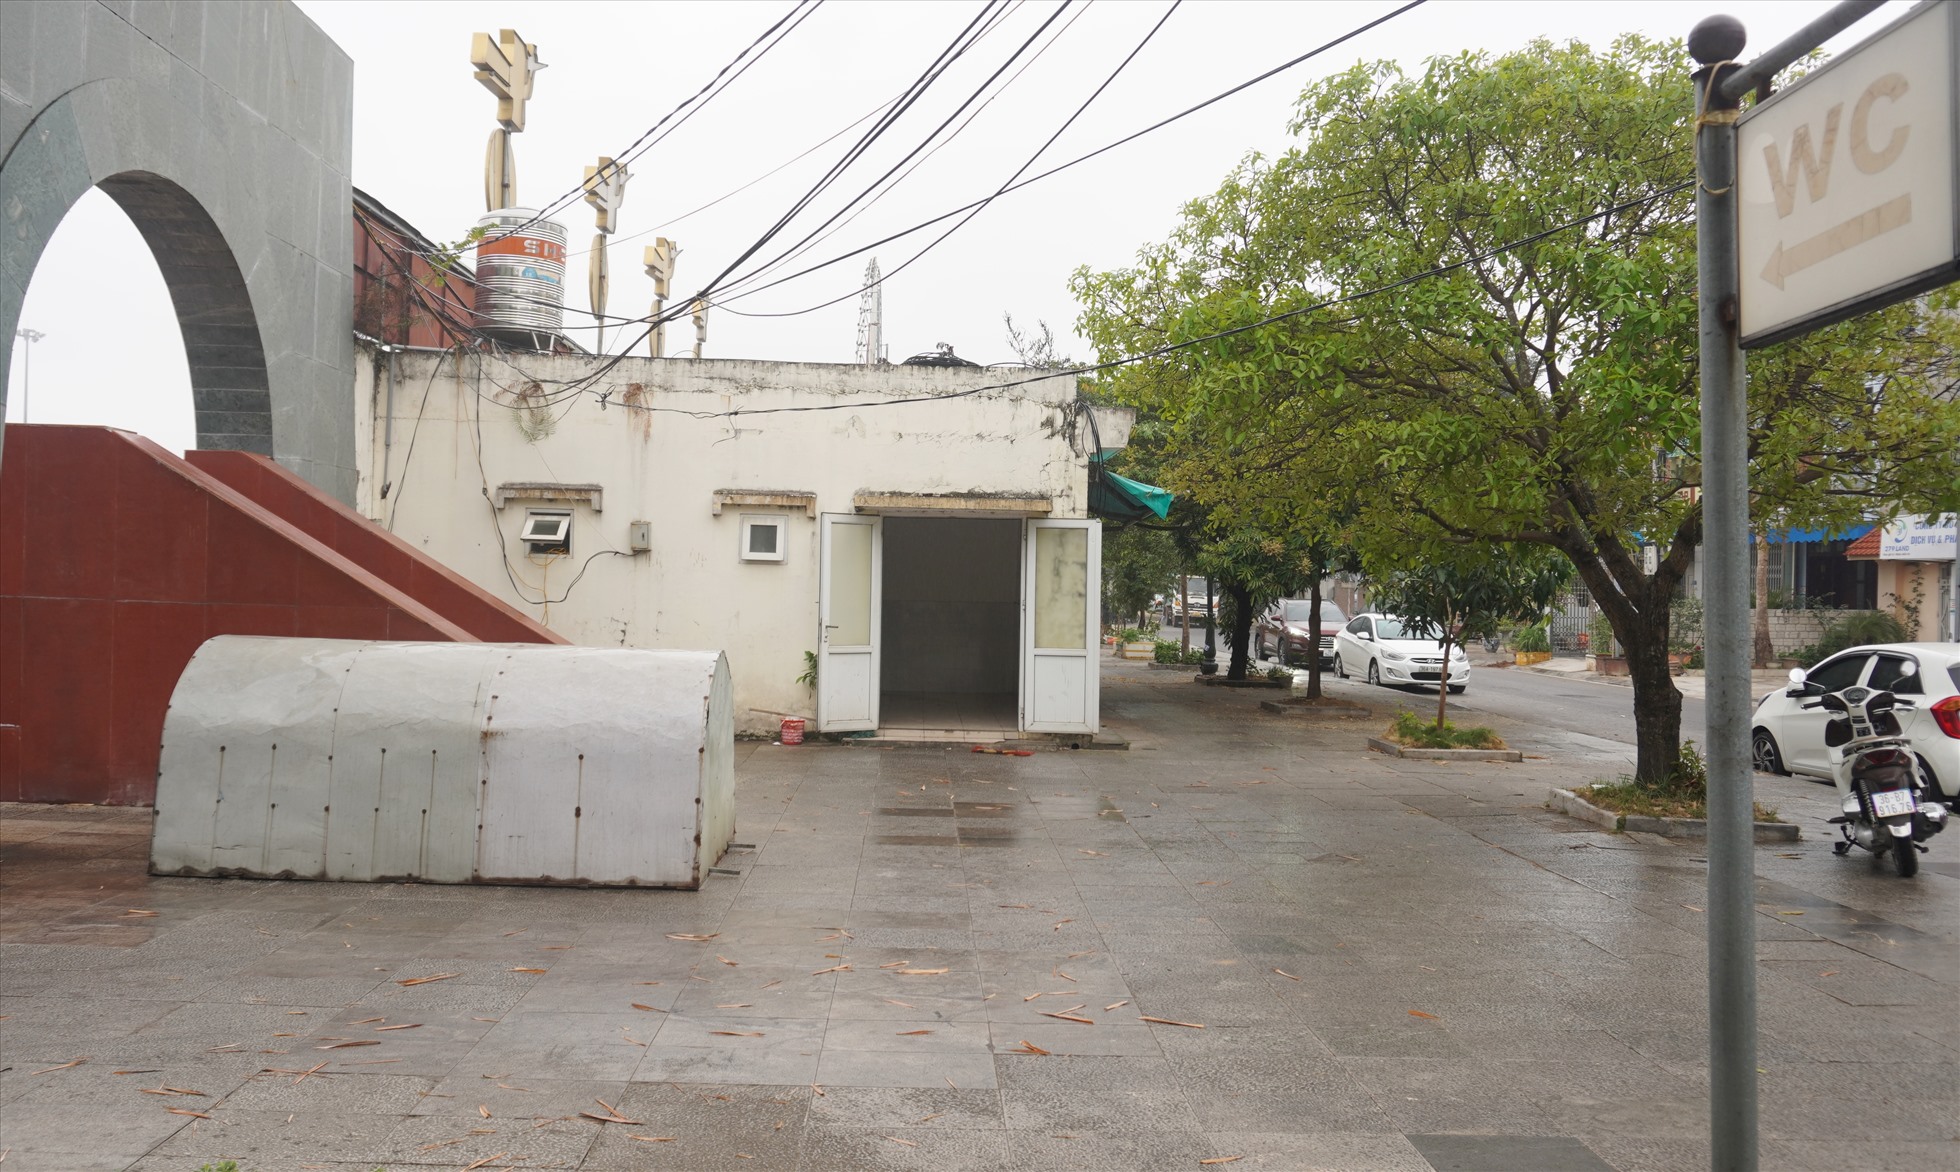 Một khu nhà vệ sinh khác, ngay phía sau sân khấu quảng trường Lam Sơn, tại đây có 2 dãy nhà vệ sinh thì một dãy đã đóng cửa, dãy còn lại mở cửa nhưng sập xệ. Ảnh: Quách Du